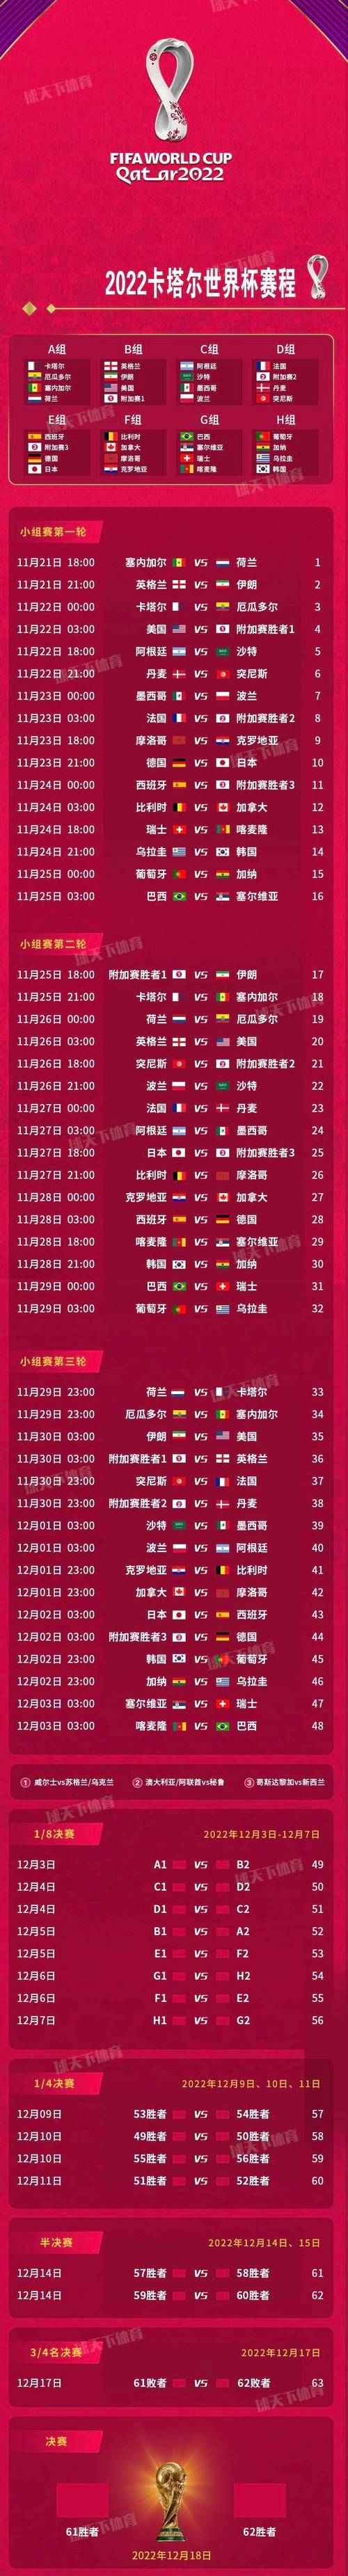 亚洲杯中国队赛程时间表卡塔尔